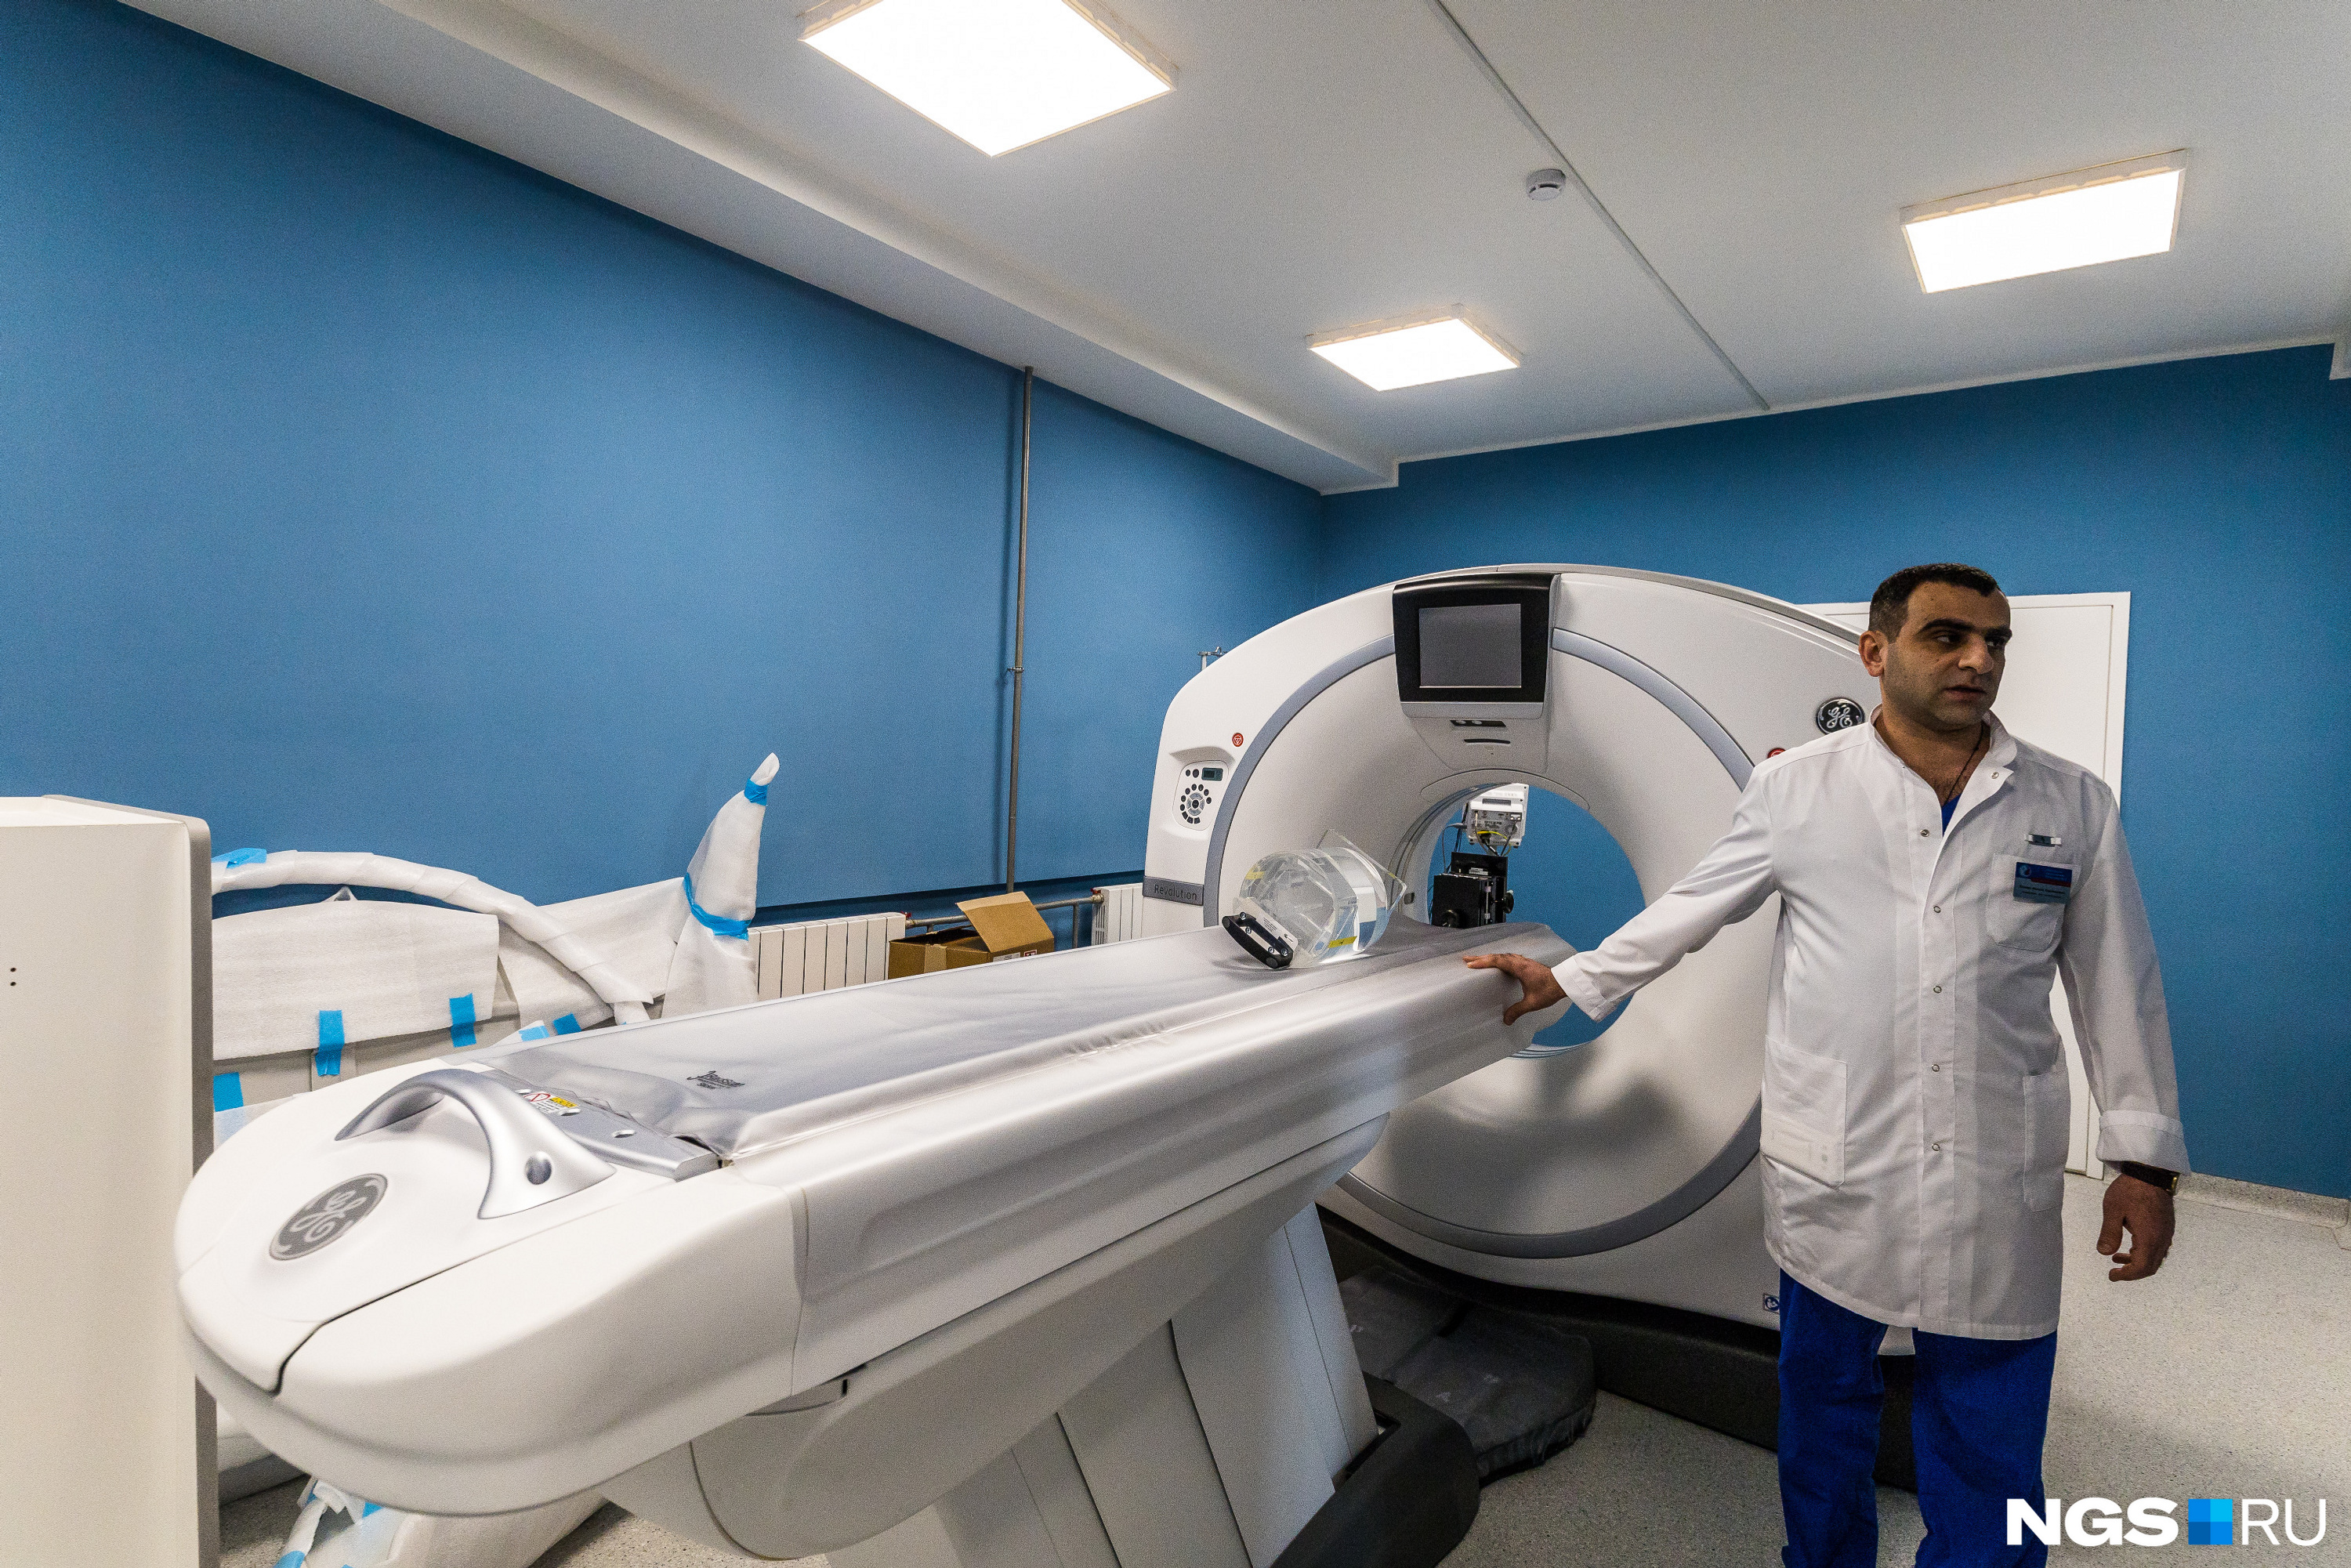 Заведующий центром показывает томографы